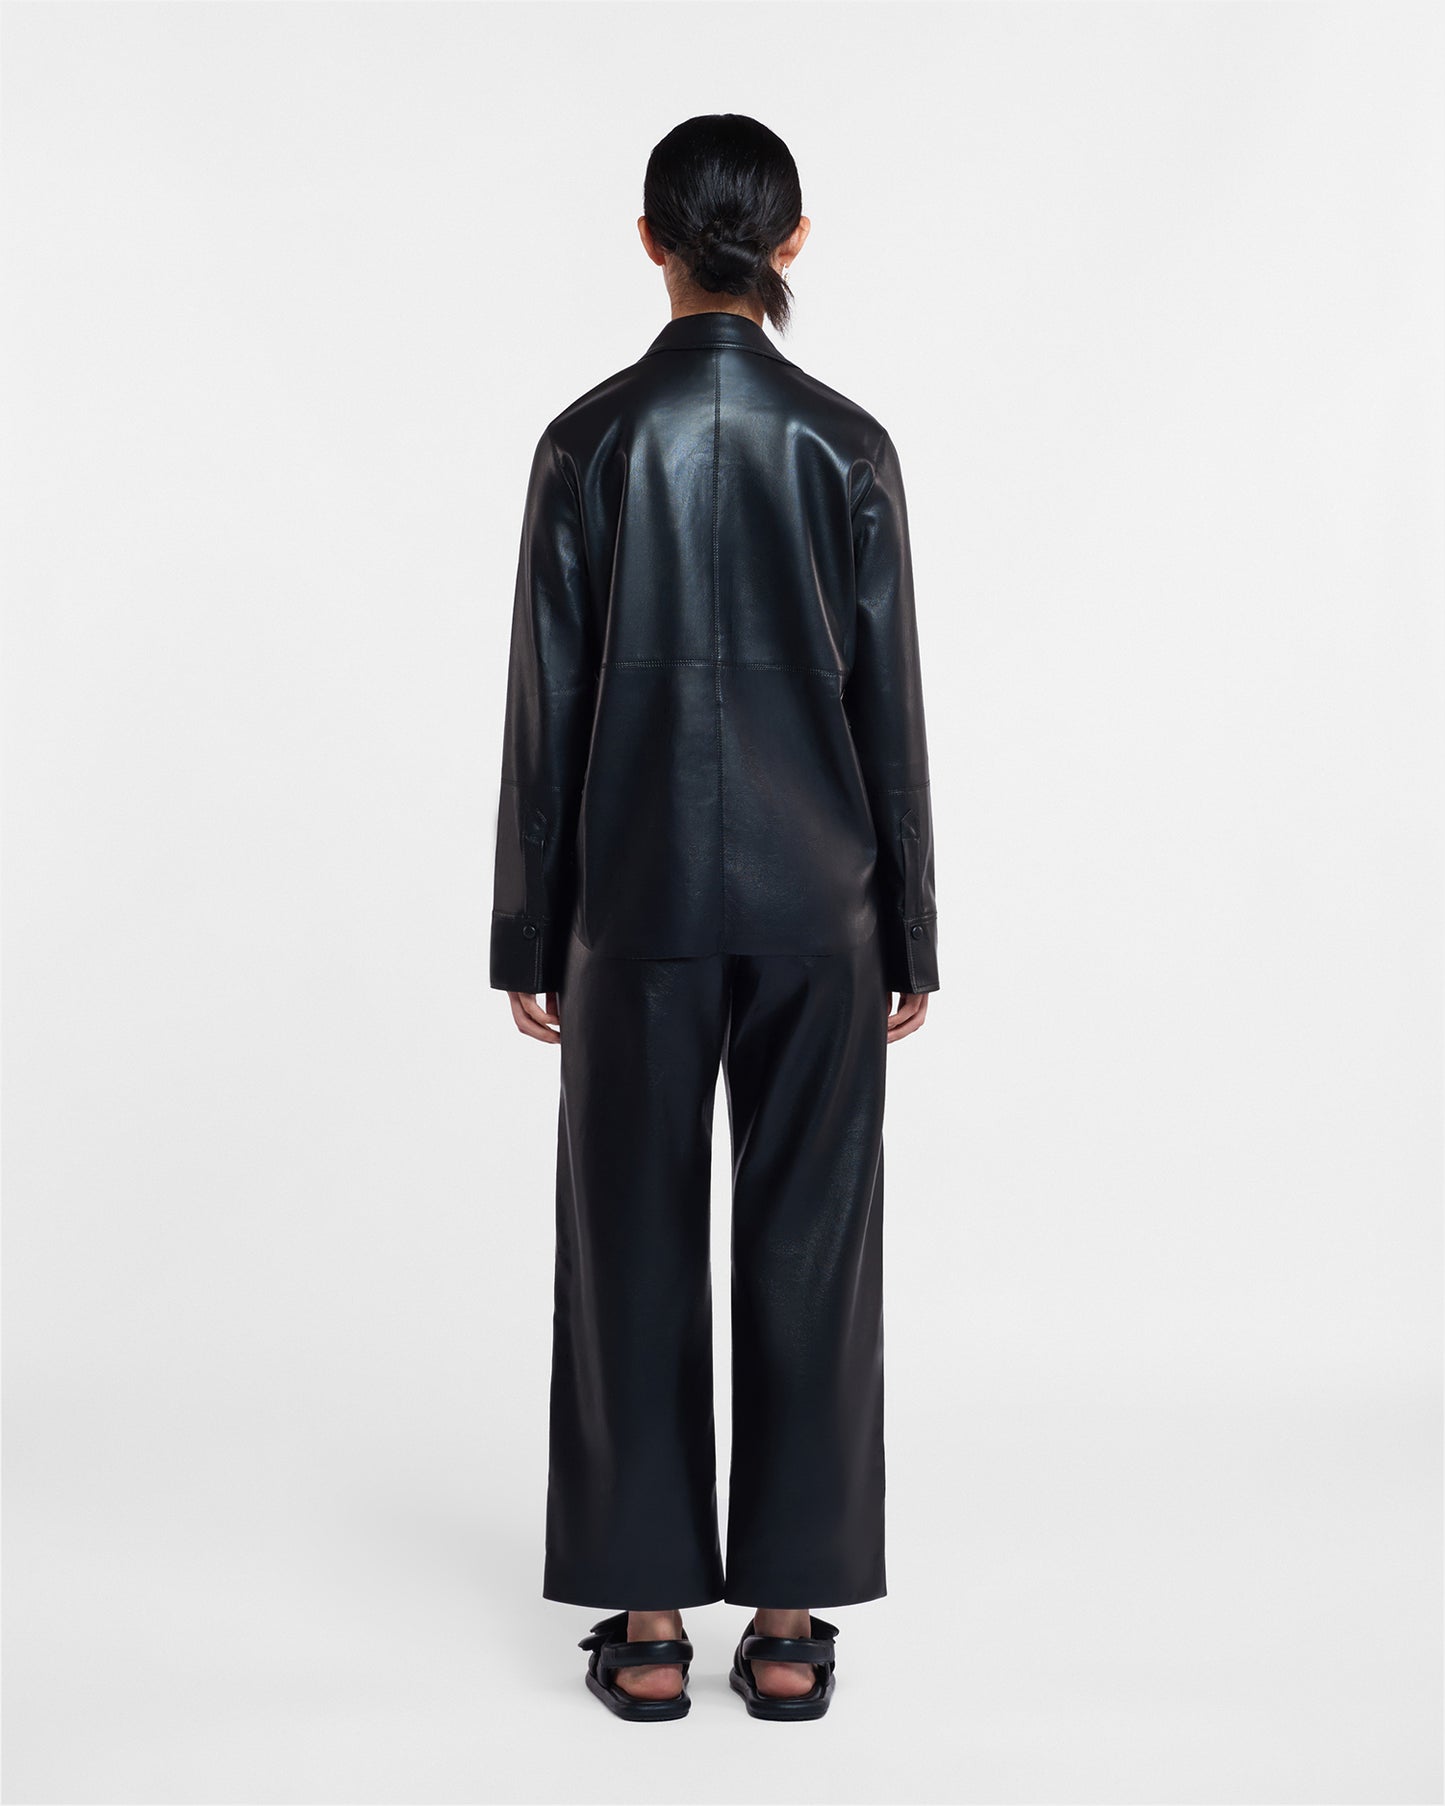 Naum - Okobor™ Alt-Leather Shirt - Black